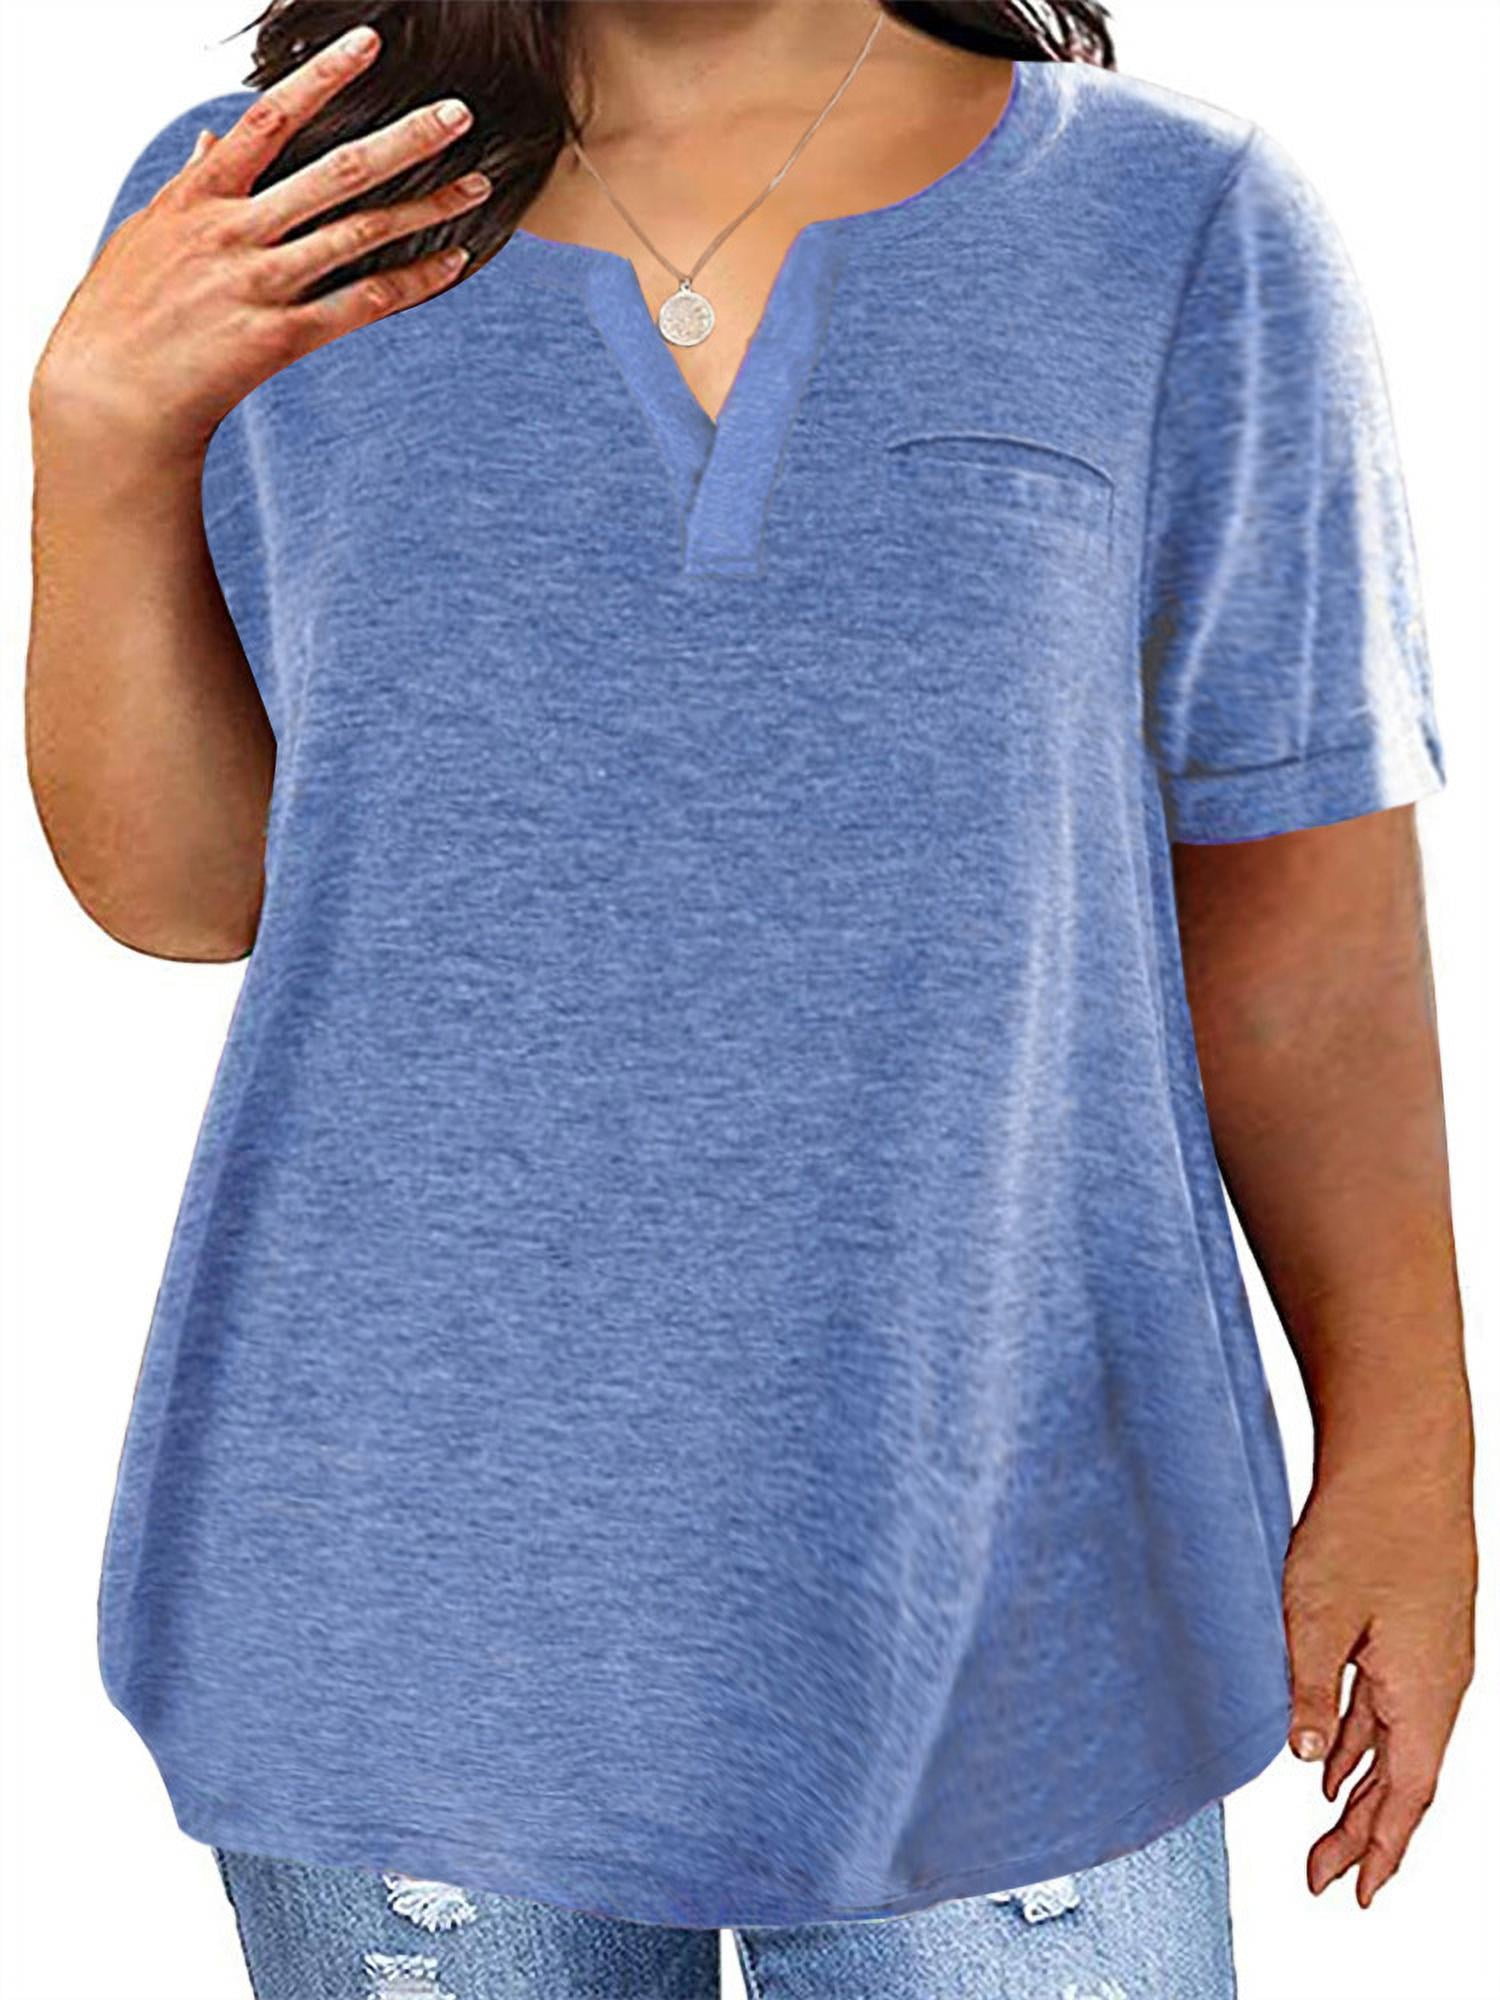 Eurivicy Women's Basic Henley Shirt Deep V-Neck Button Up Tees Summer Short Sleeve T-Shirt Tops